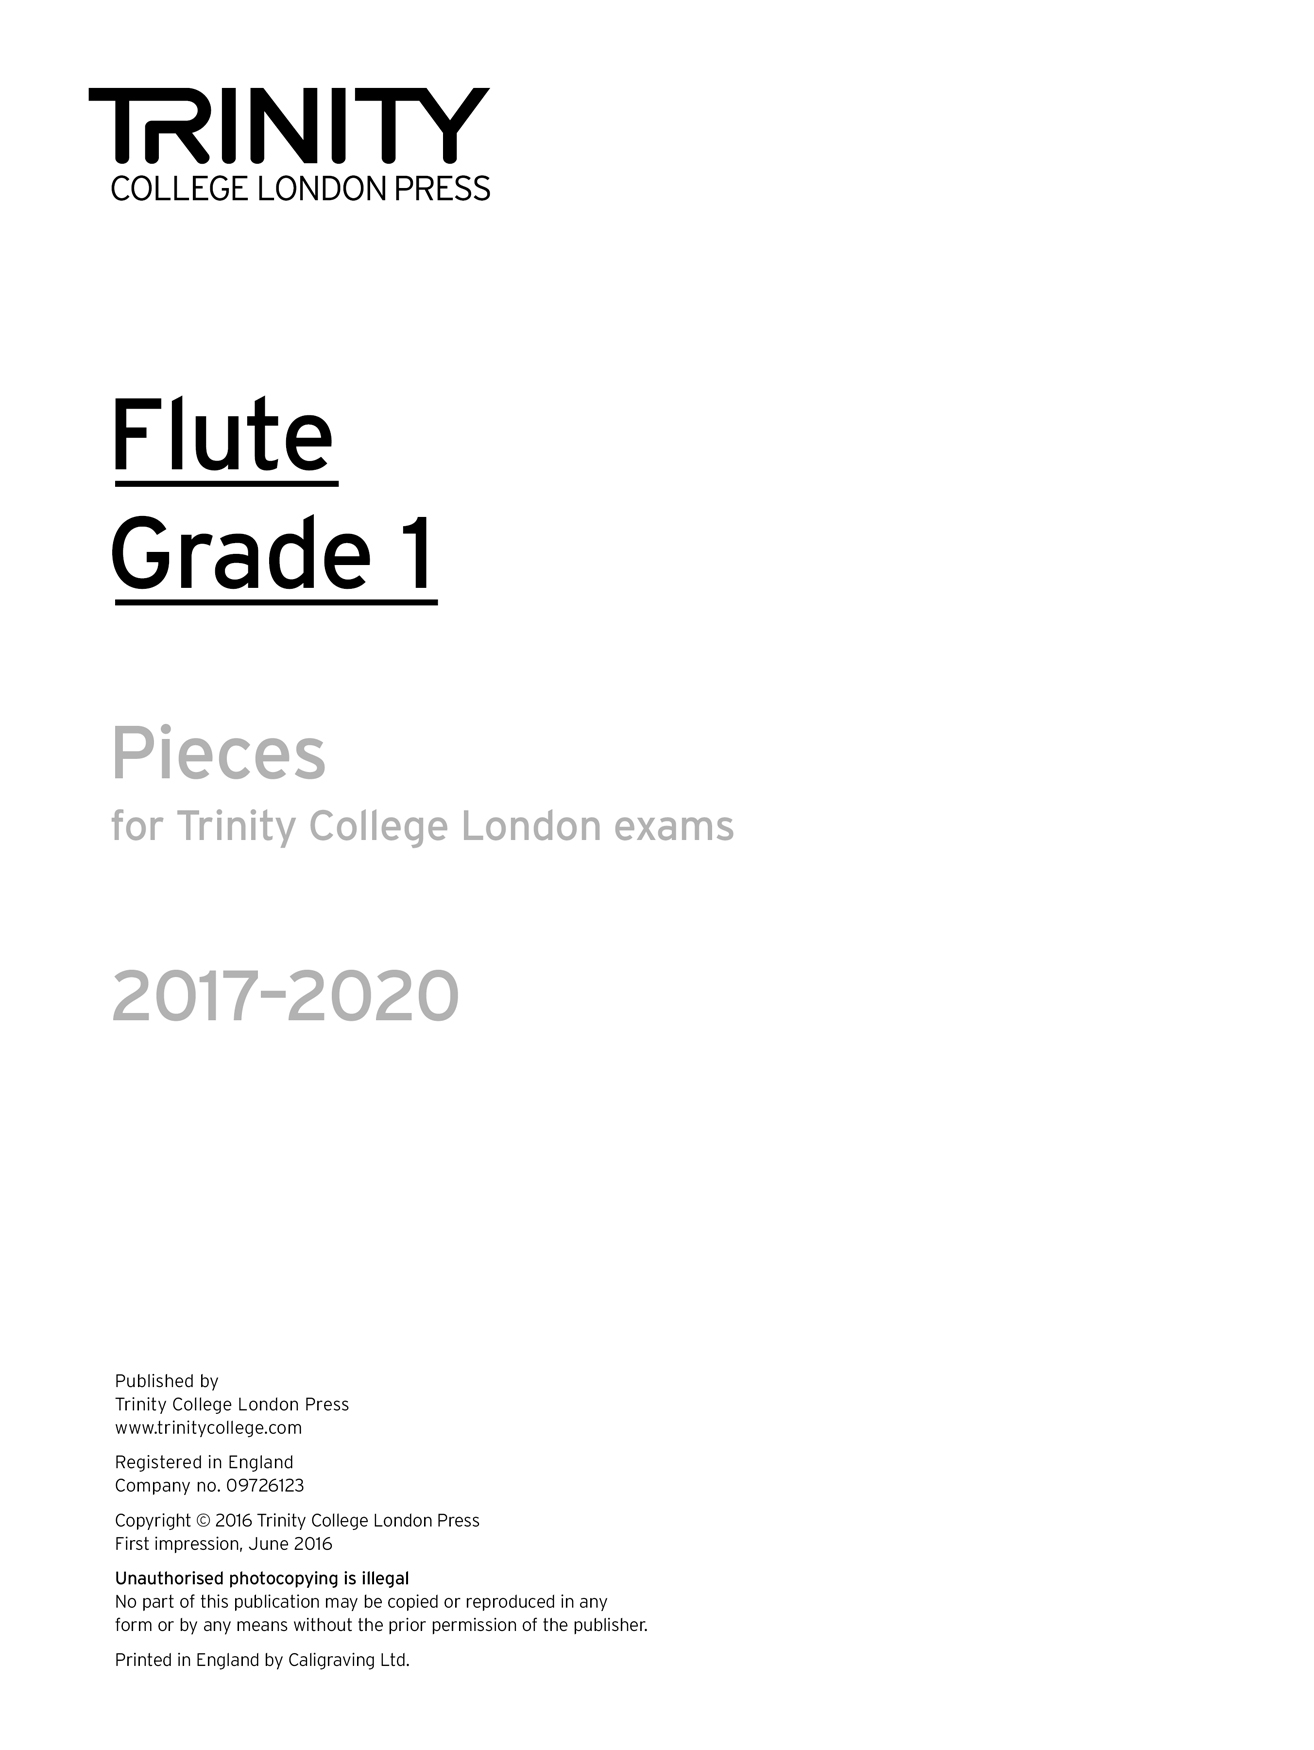 Flute Exam 2017-2020 - Grade 1: Flute: Part